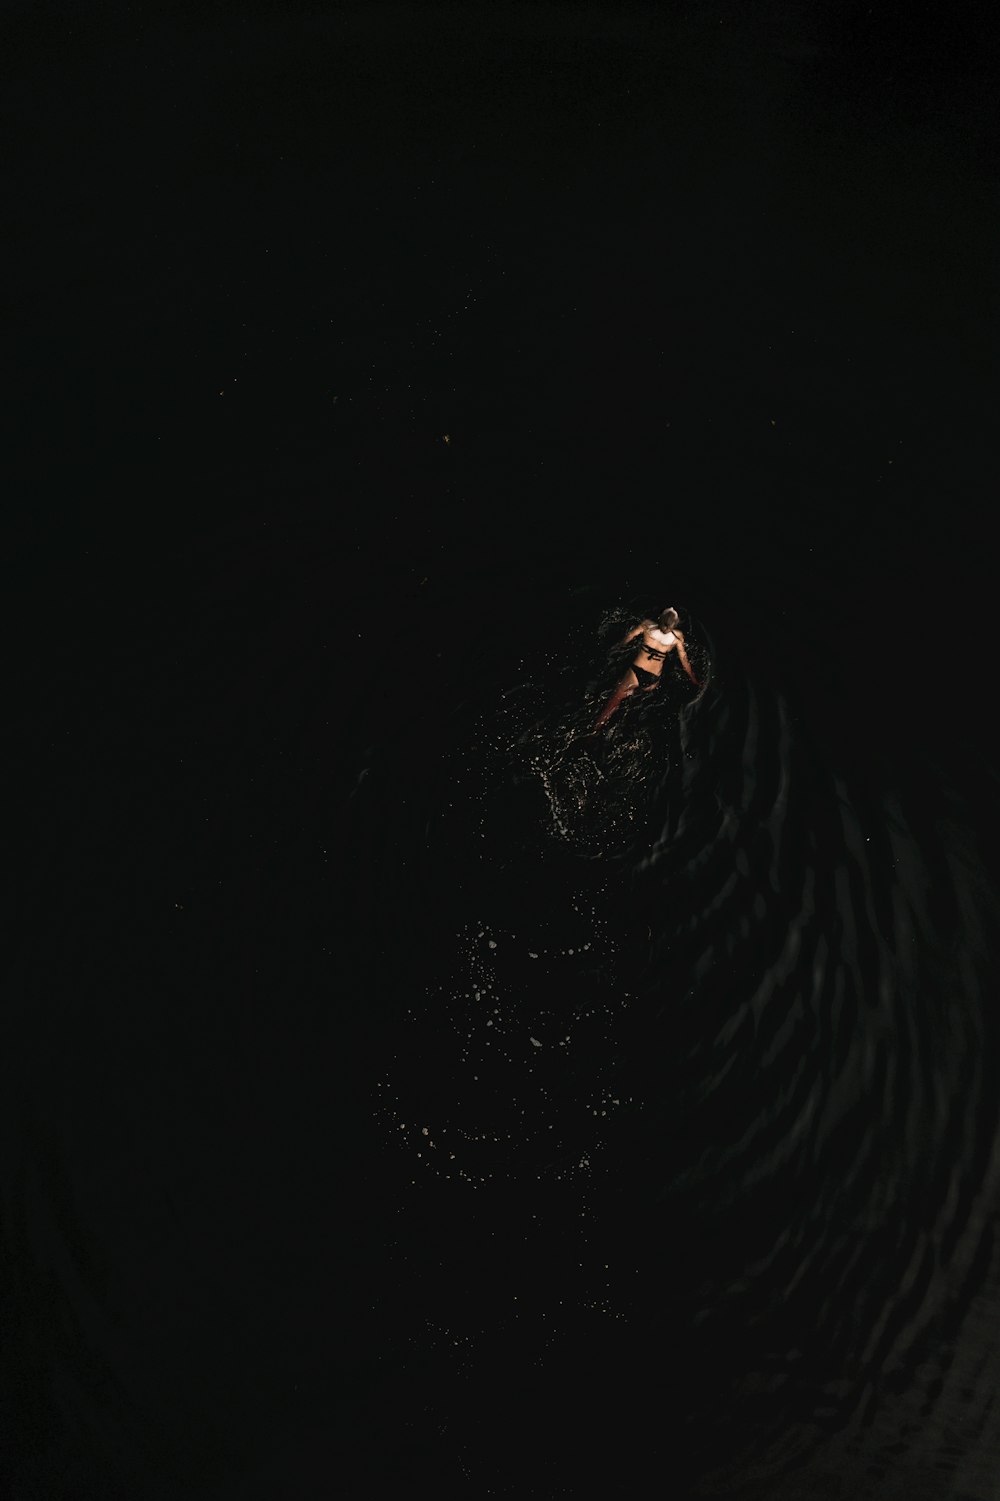 Una persona flotando en el agua por la noche